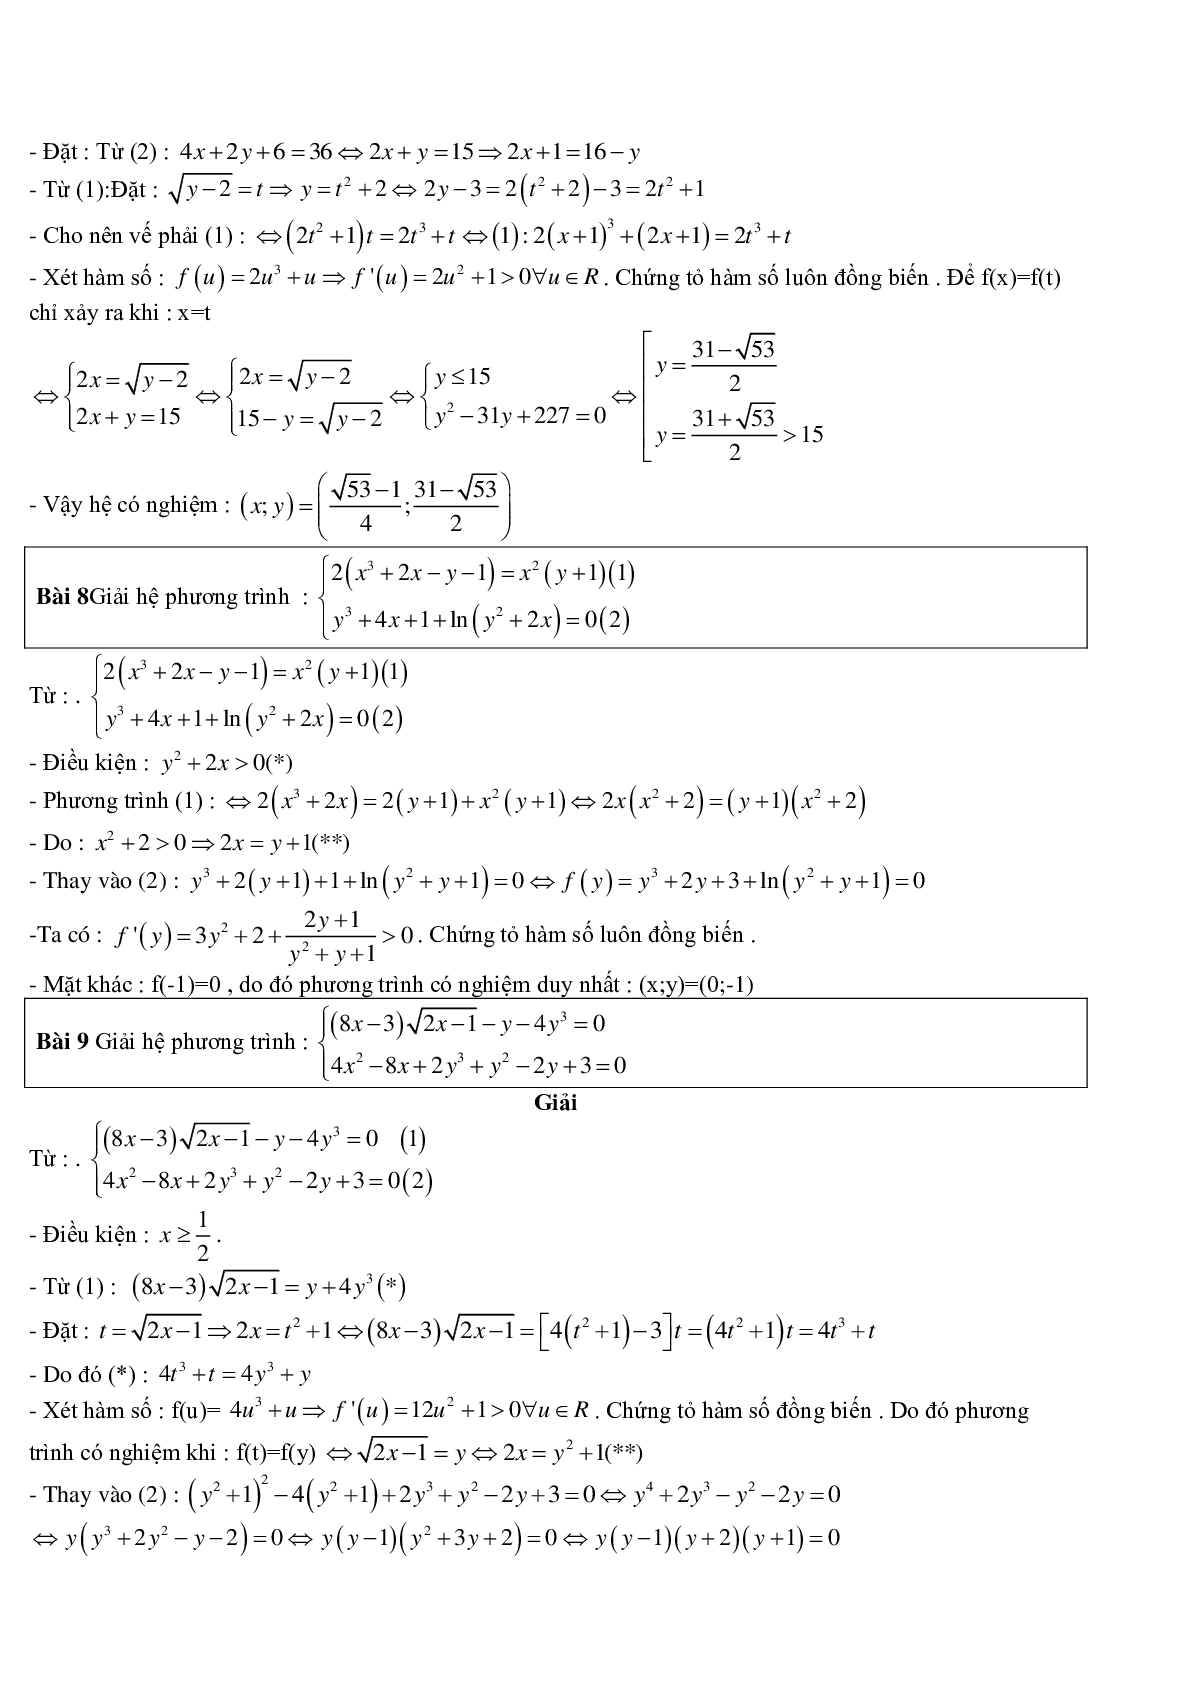 60 bài toán giải hệ phương trình bằng phương pháp hàm số điển hình (trang 4)